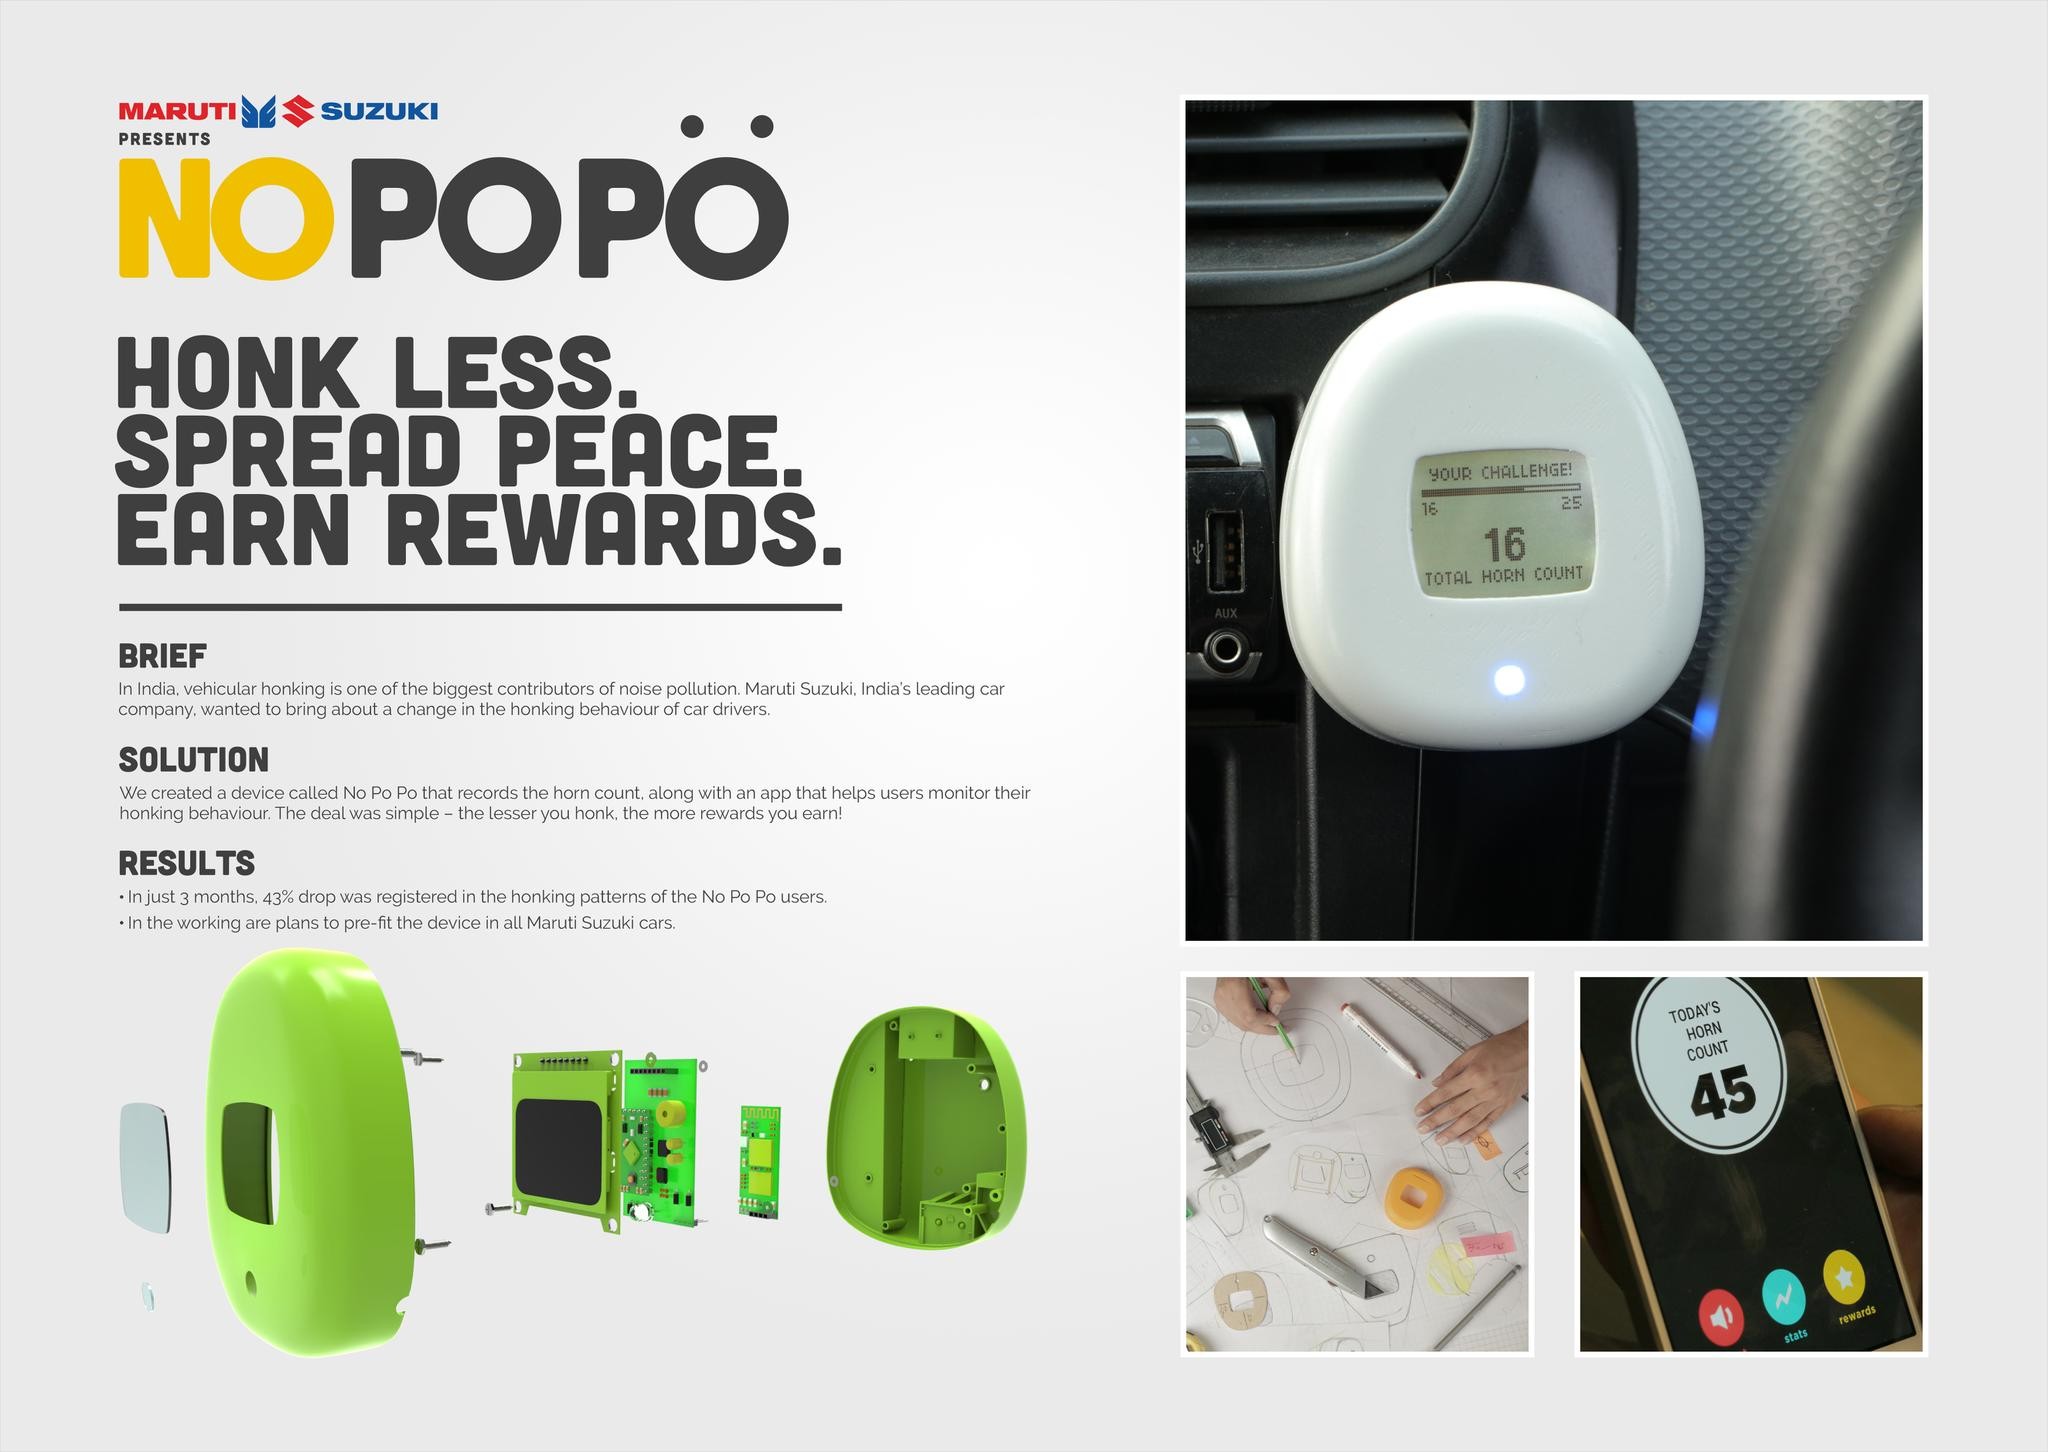 No Po Po: Honk Less. Earn Rewards.